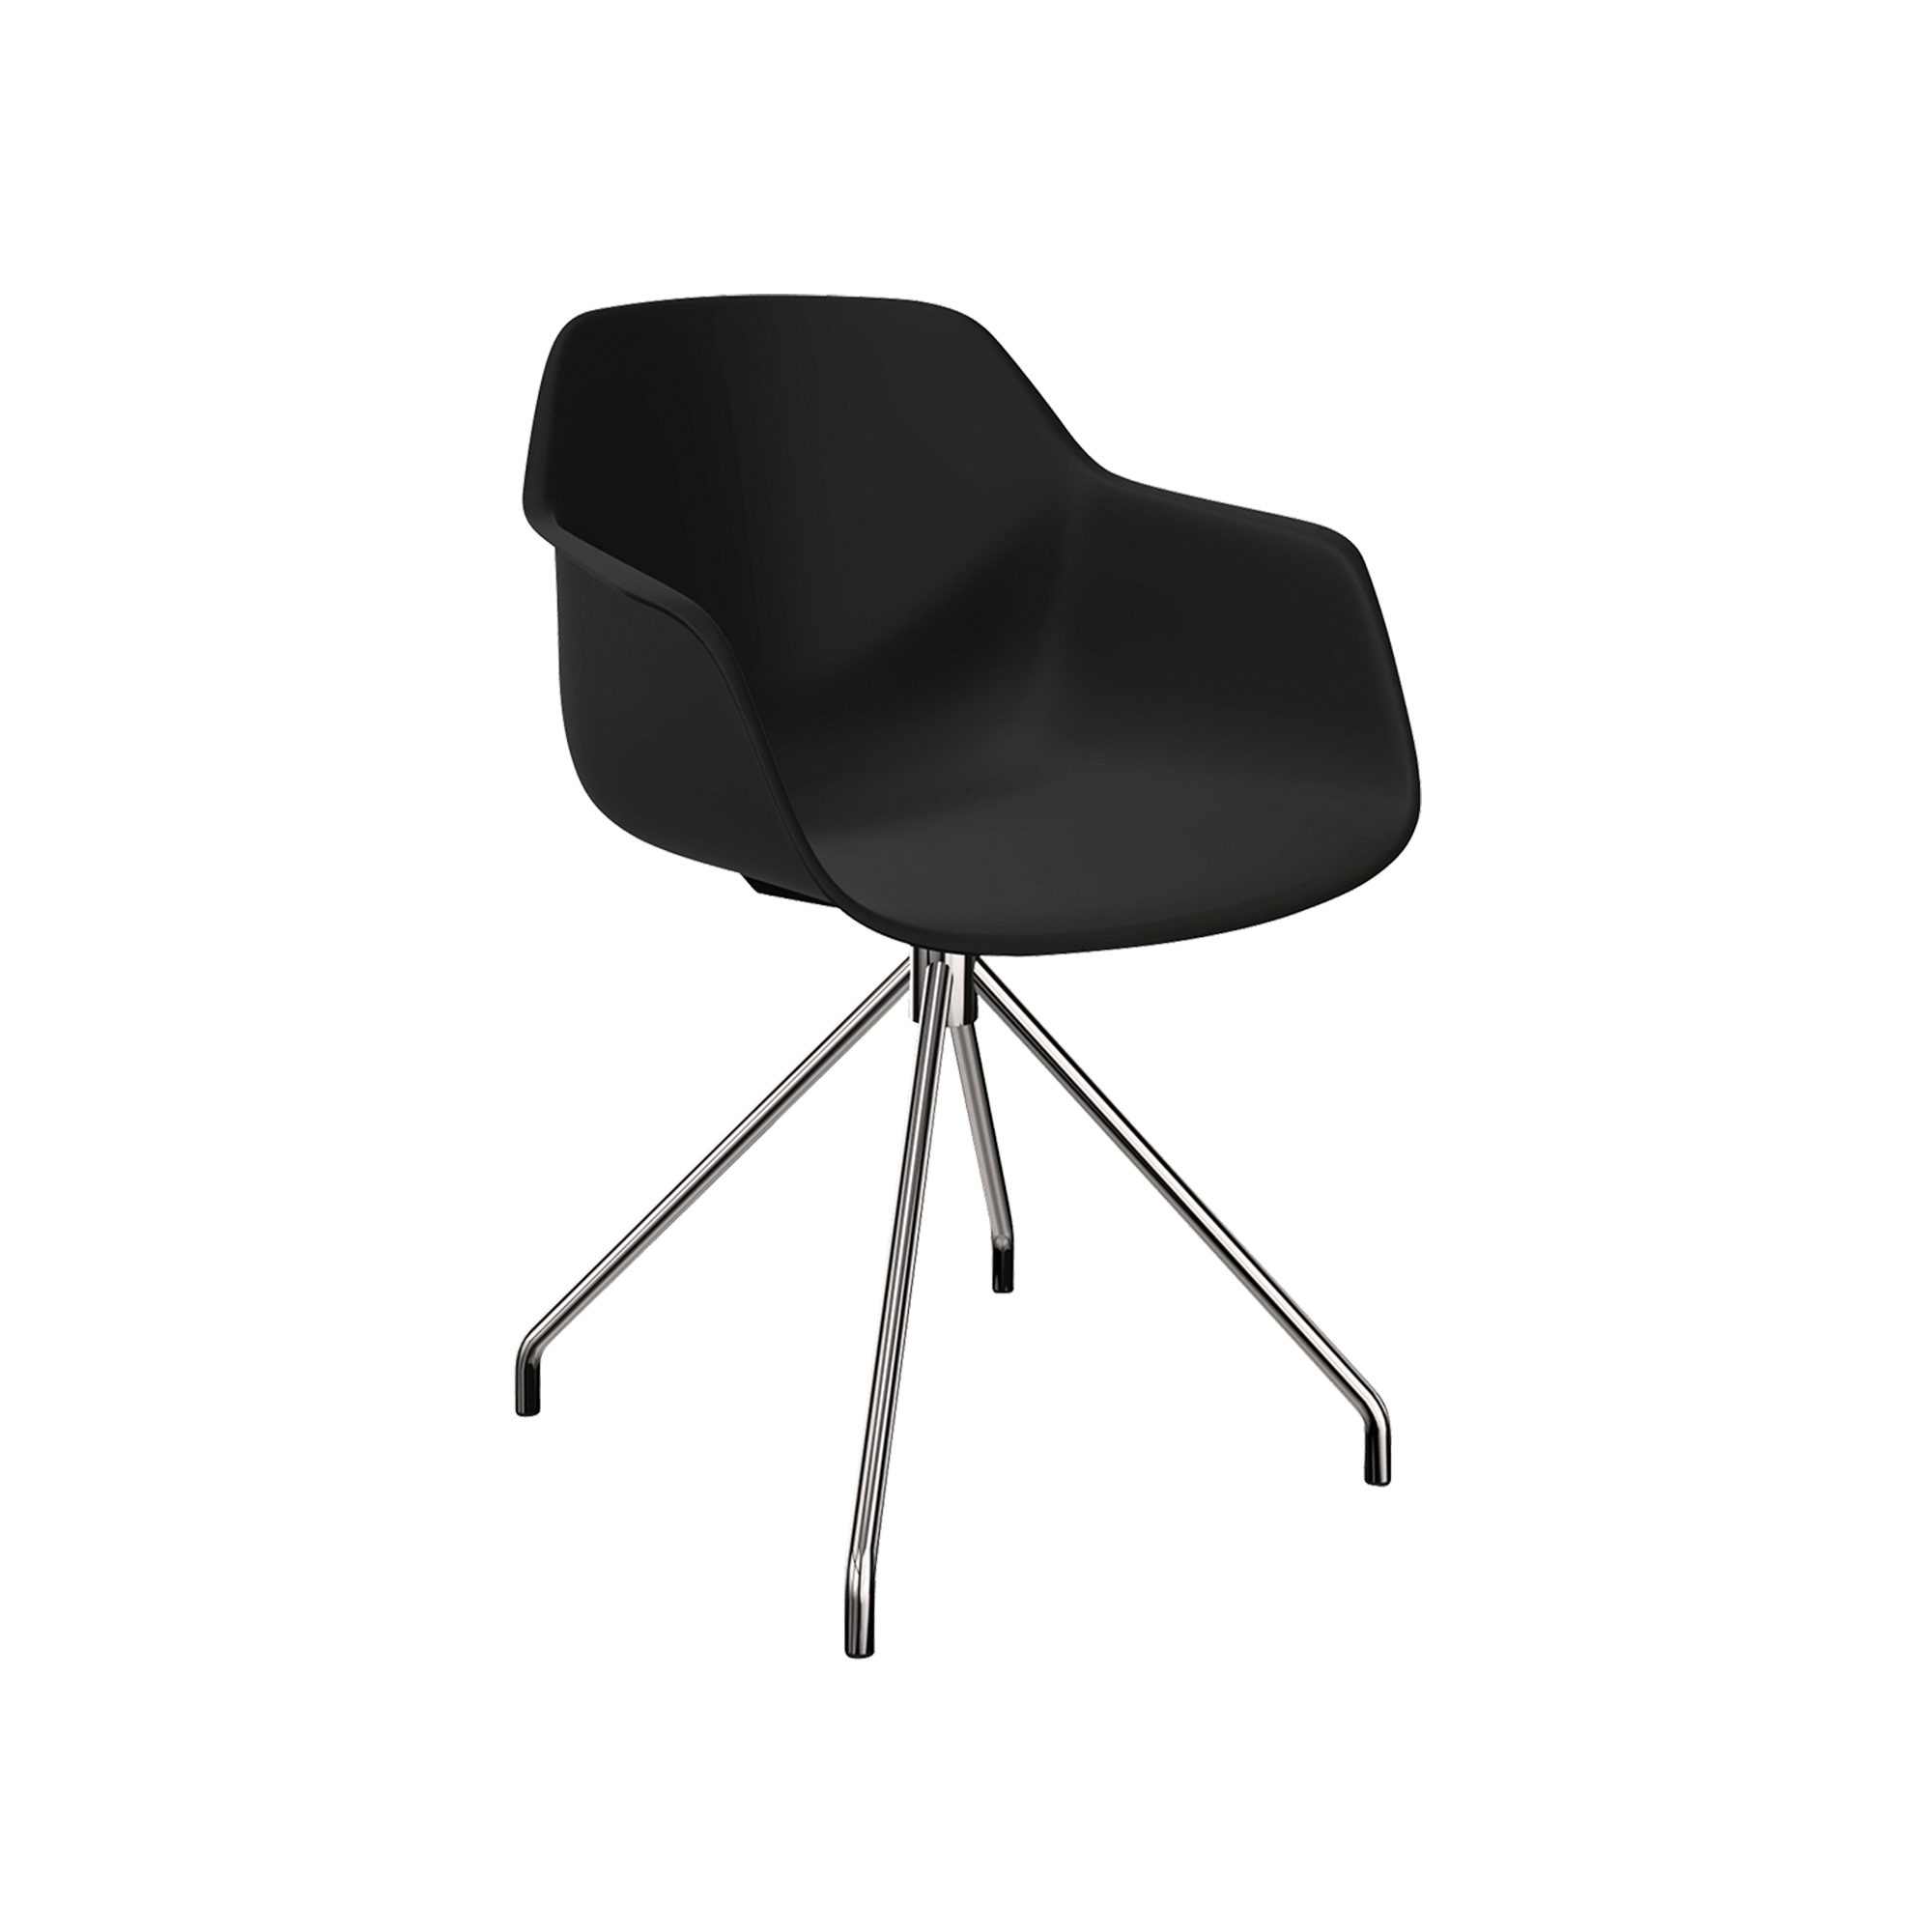 black chair with pedestal leg